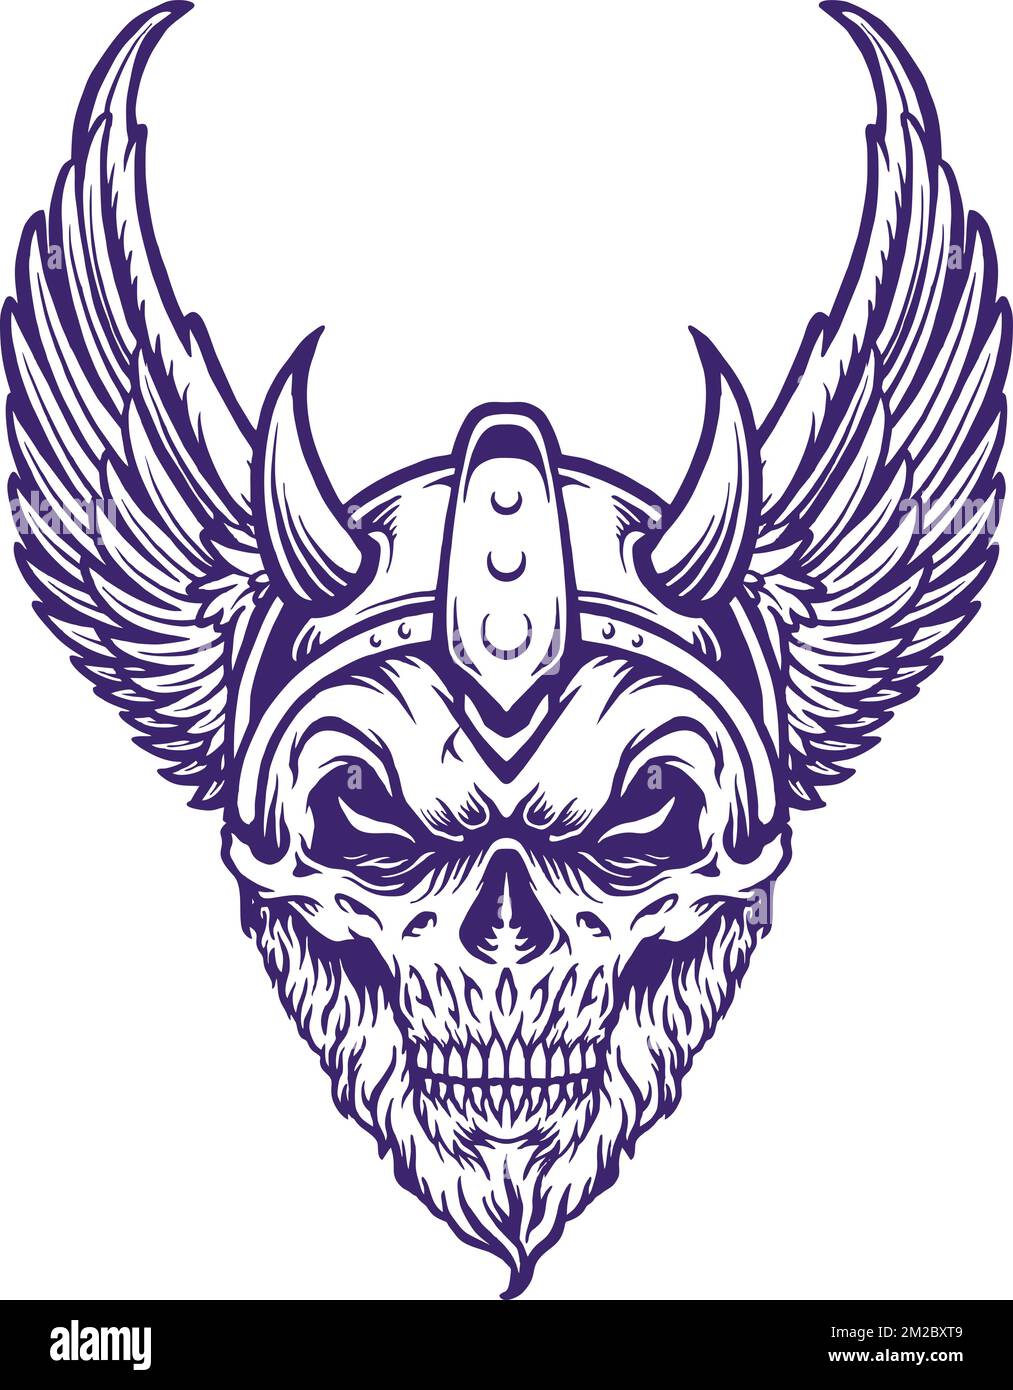 Les ailes de crâne Viking Warrior Head présentent des illustrations vectorielles pour votre logo, votre t-shirt, vos autocollants et vos étiquettes, ainsi que votre affiche Illustration de Vecteur